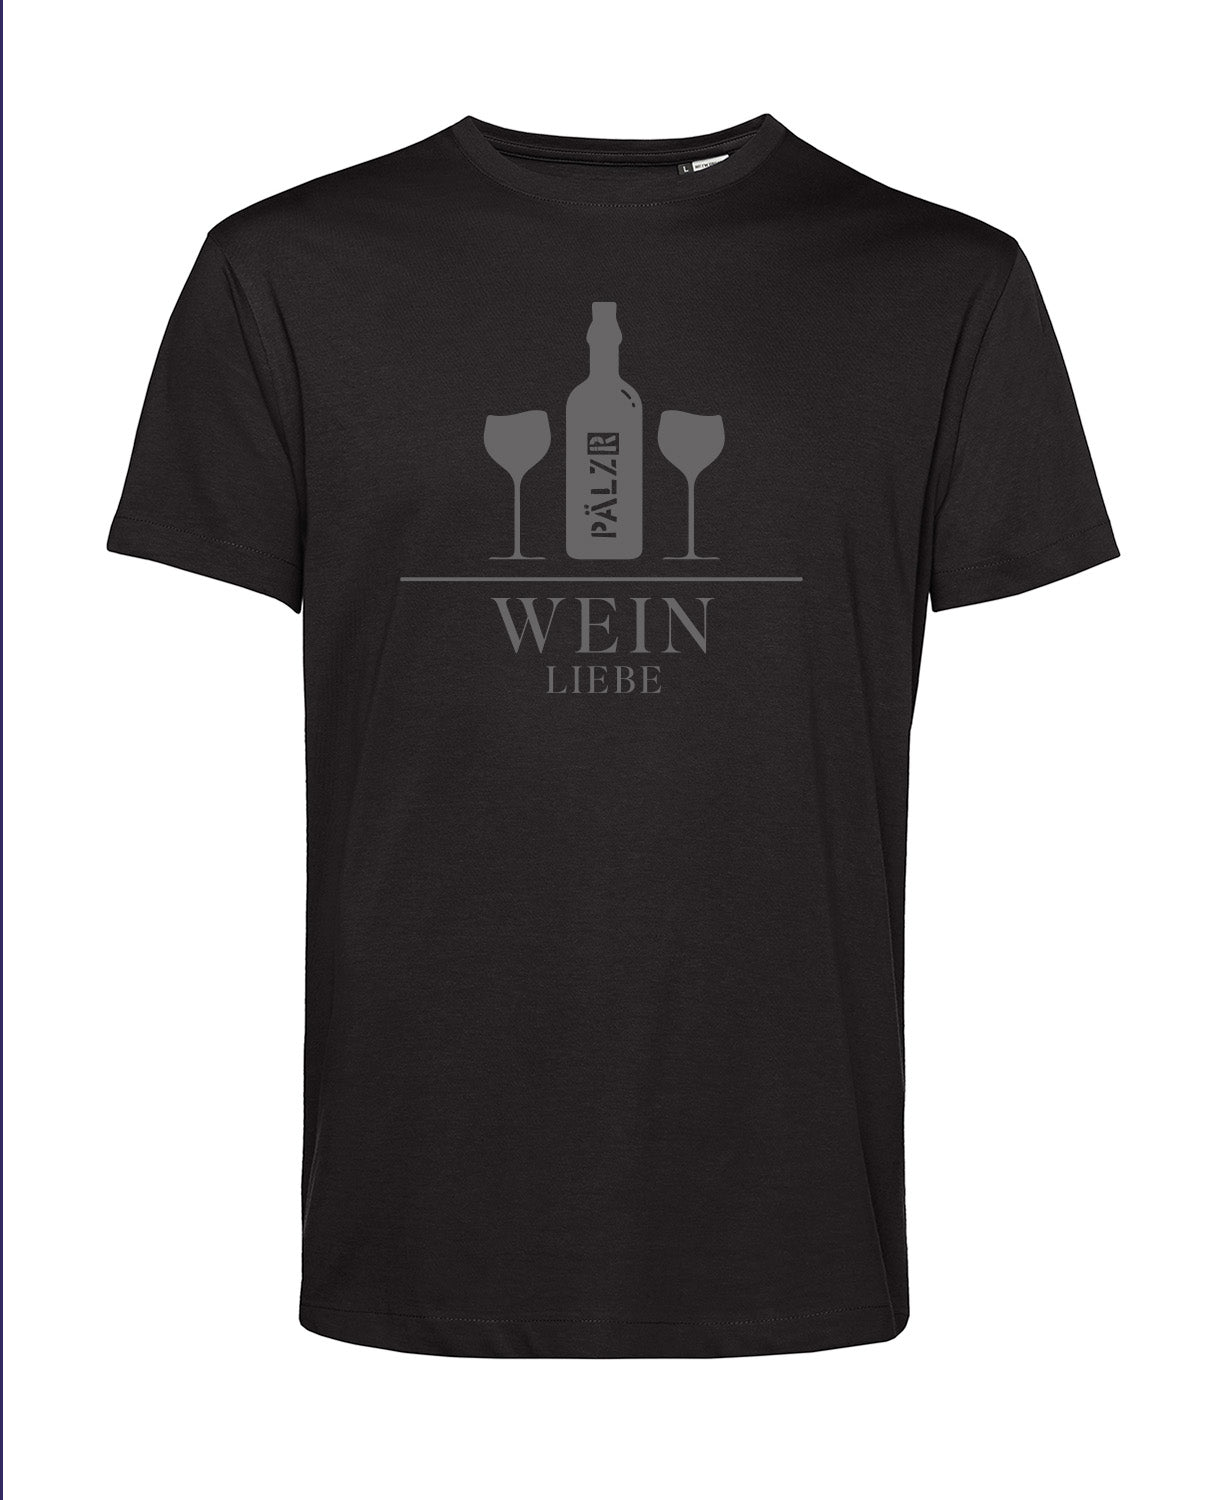 Männer | T-Shirt | Weinliebe | schwarz | Logo anthrazit